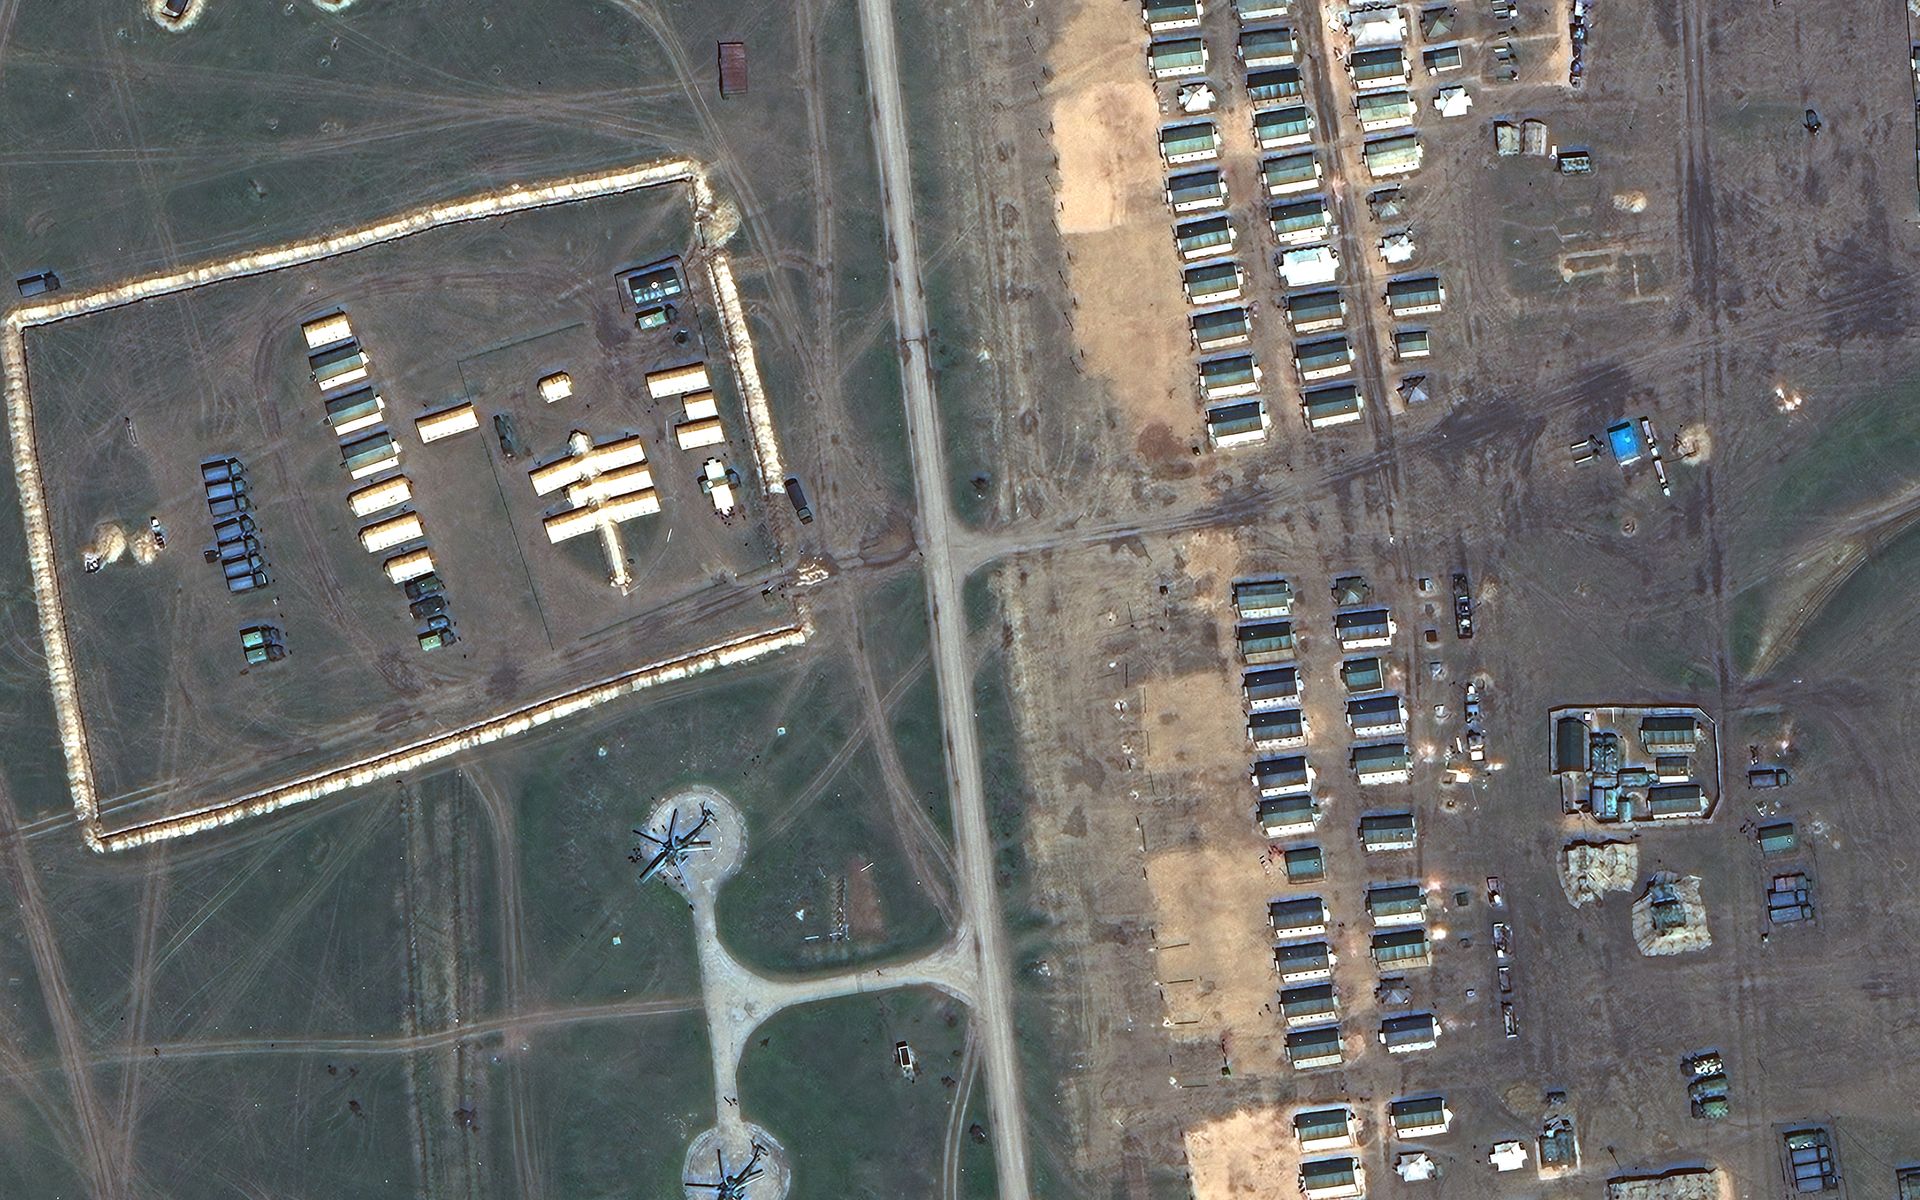 Alojamiento de tropas rusas, un hospital de campaña, helicópteros de ataque y vehículos militares en el área de entrenamiento de Opuk en Crimea. Imagen de satélite tomada el 15 de abril. (©2021 Maxar Technologies)